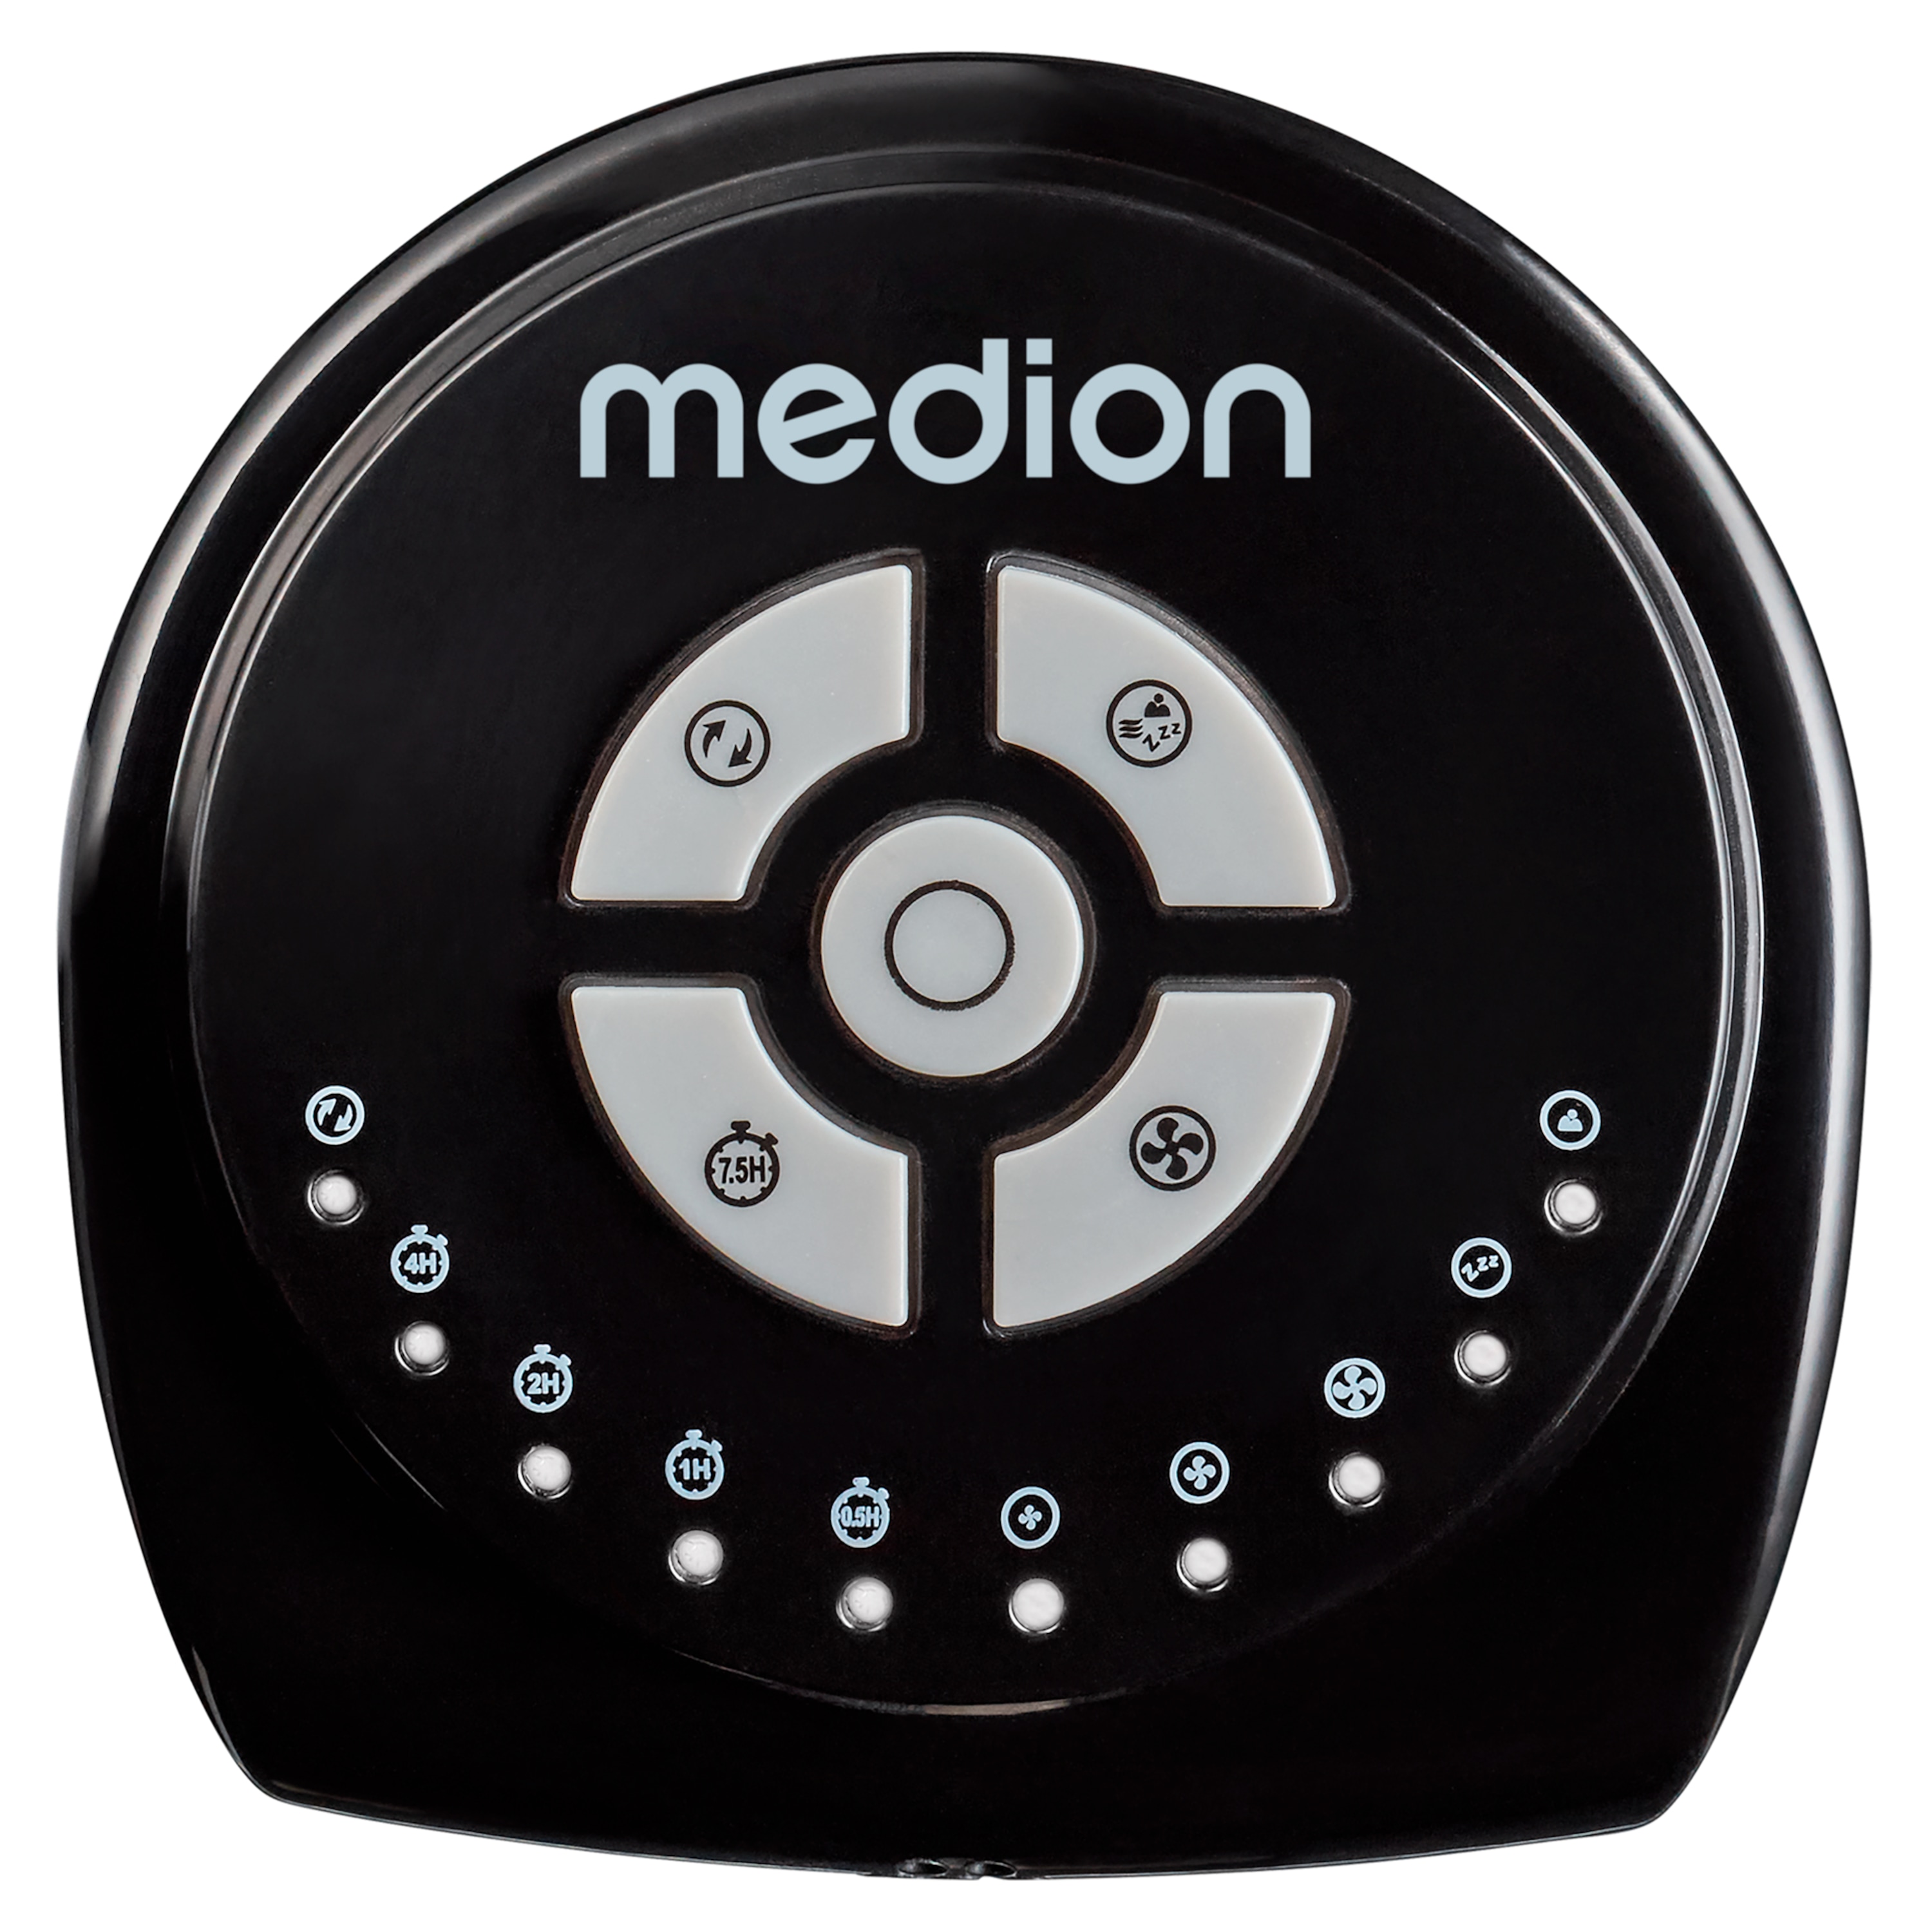 MEDION® LIFE E10 TF Turmventilator (MD 10319), 3 Geschwindigkeitsstufen, 45 Watt Leistung, zuschaltbare Schwenkfunktion, inkl. Fernbedienung